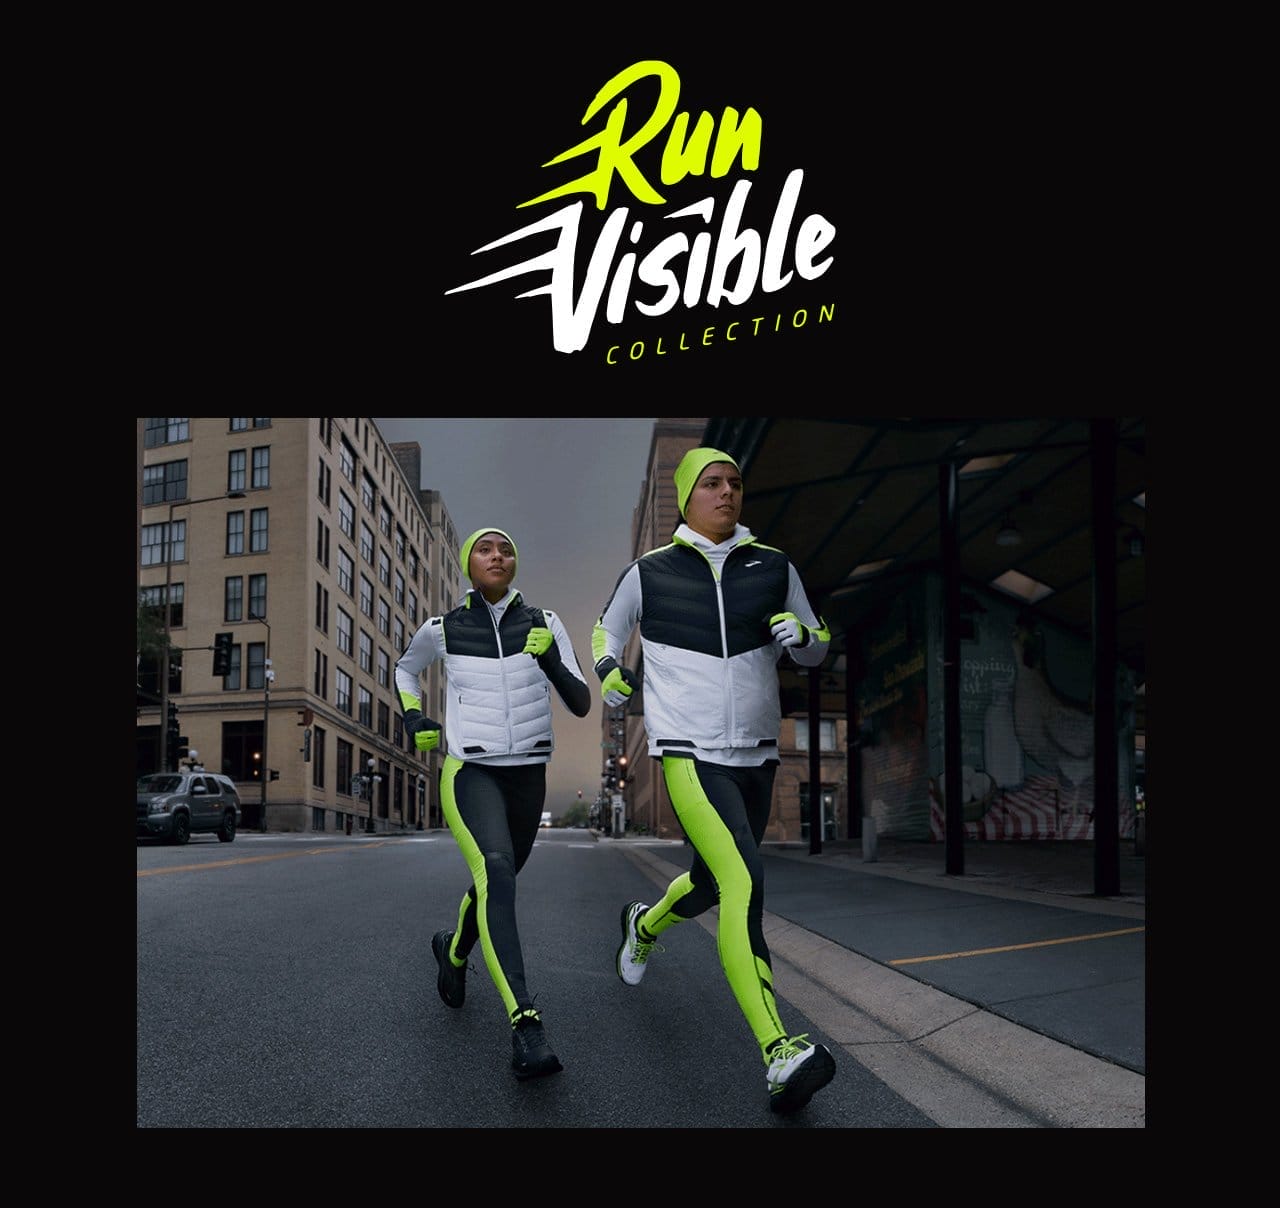 Run Visible Collection